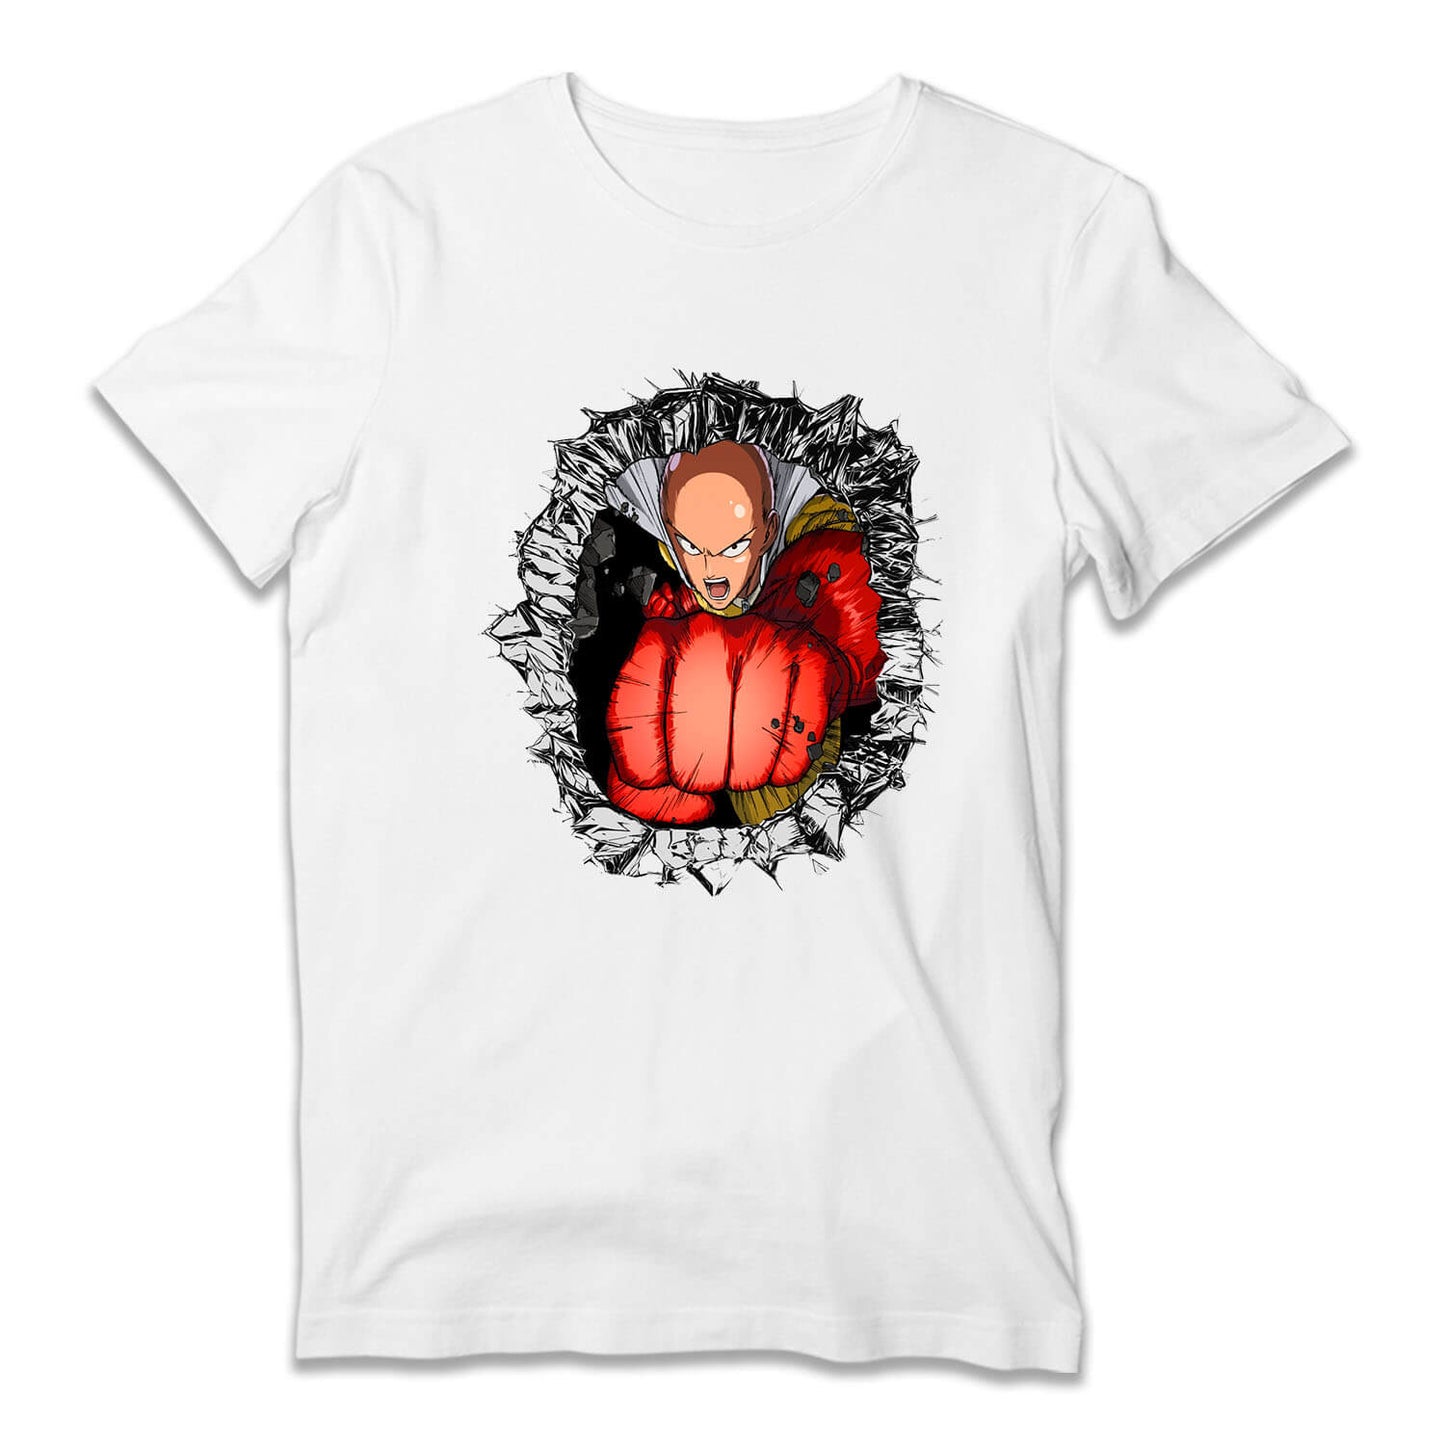 Saitama - One Punch Man T-Shirt